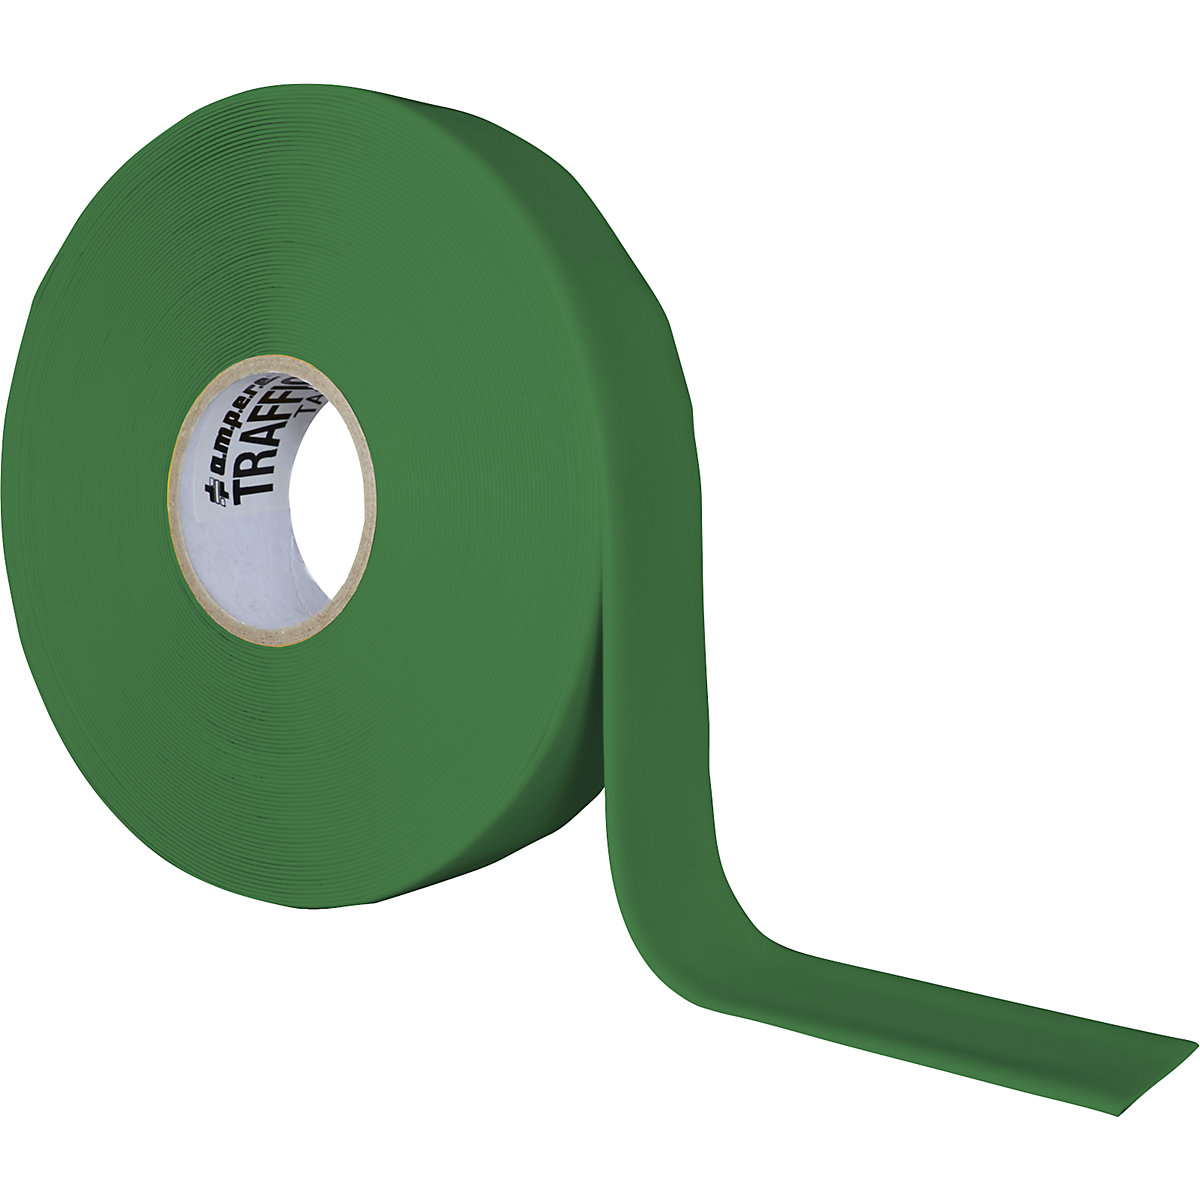 Fita de marcação para o chão, extra forte – Ampere, largura 50 mm, verde-6